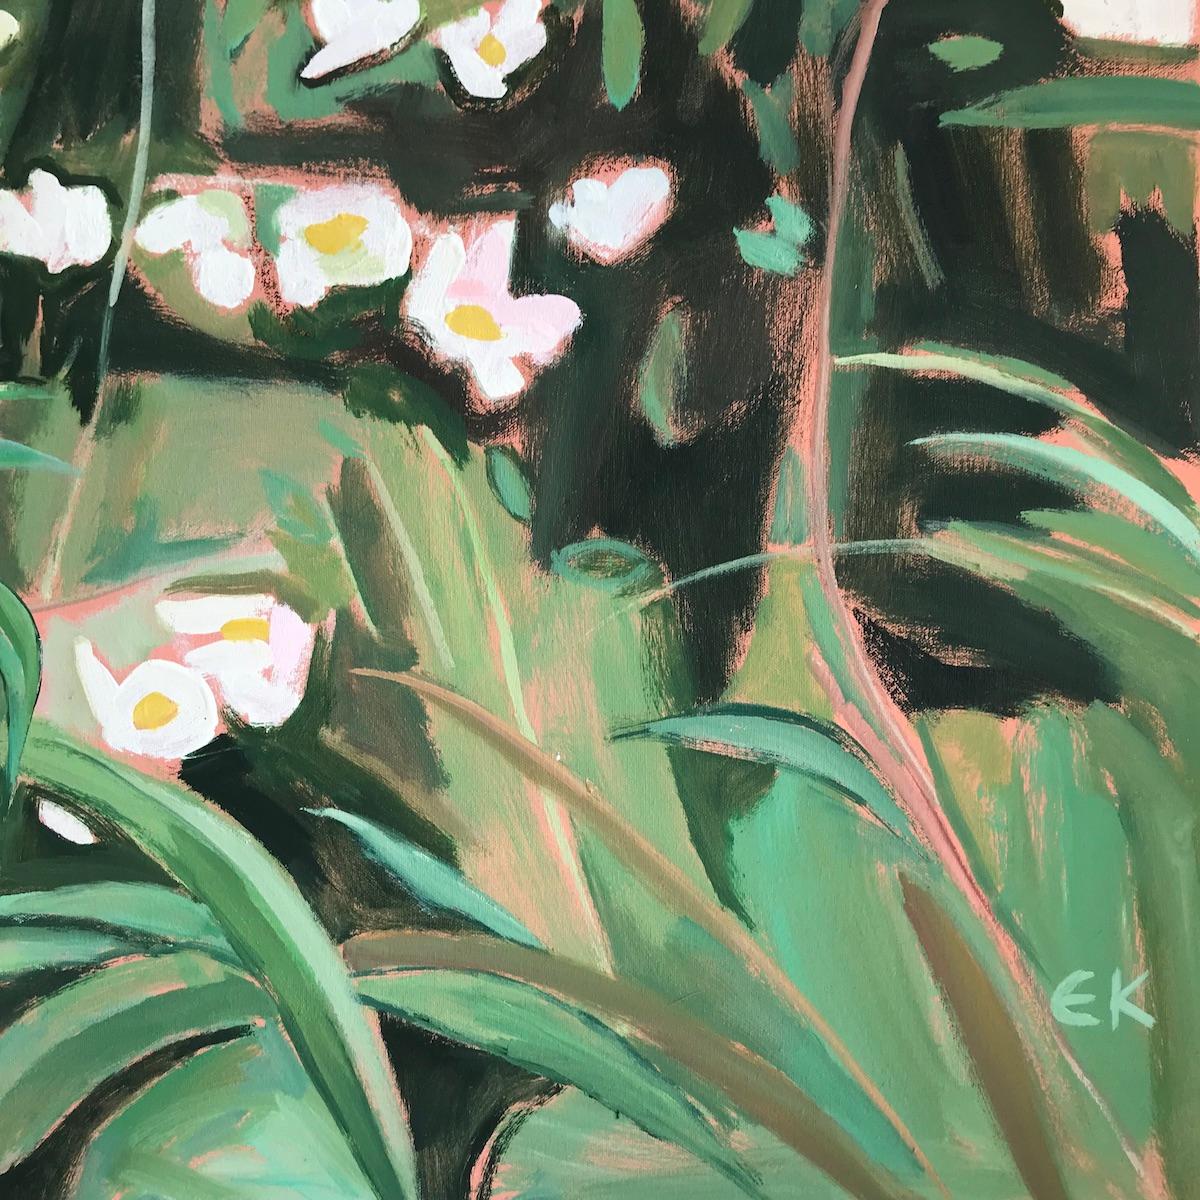 Summer hedgerows with Dog & Roses, Elaine Kazimierczuk, Original floral art - Gray Landscape Painting by Elaine Kazimierczuk 